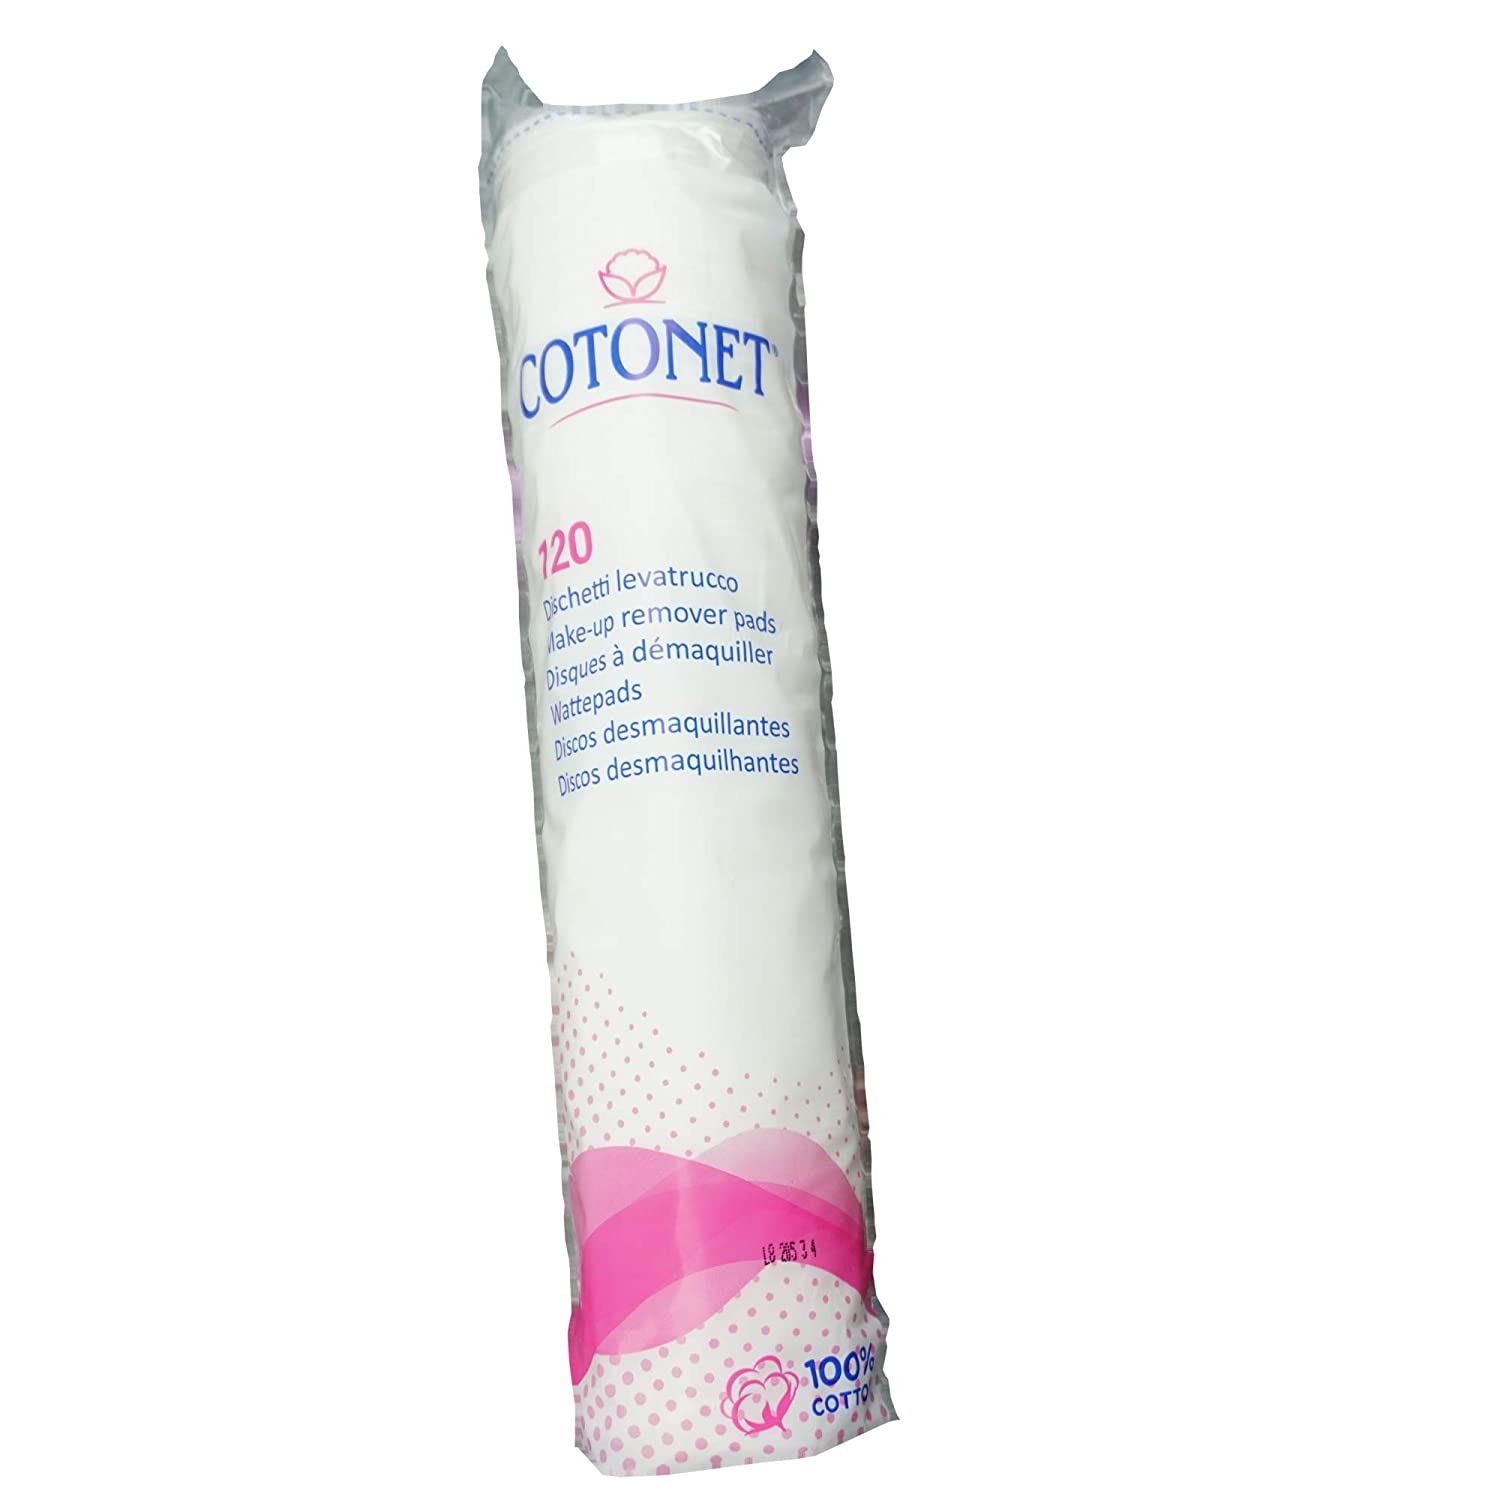 Cotonet make-up remover pads 100% cotton 24x 120 pcs value pack